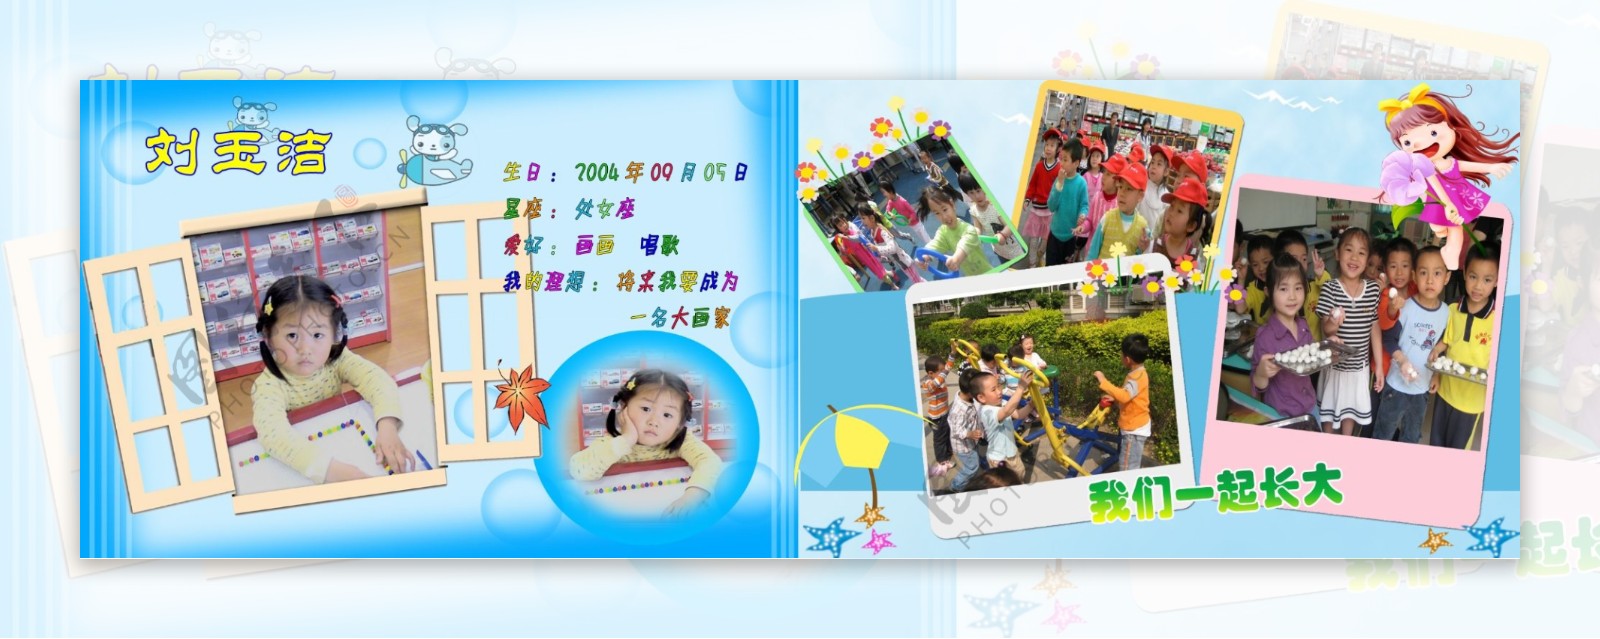 幼儿园毕业纪念册内页在园活动图片